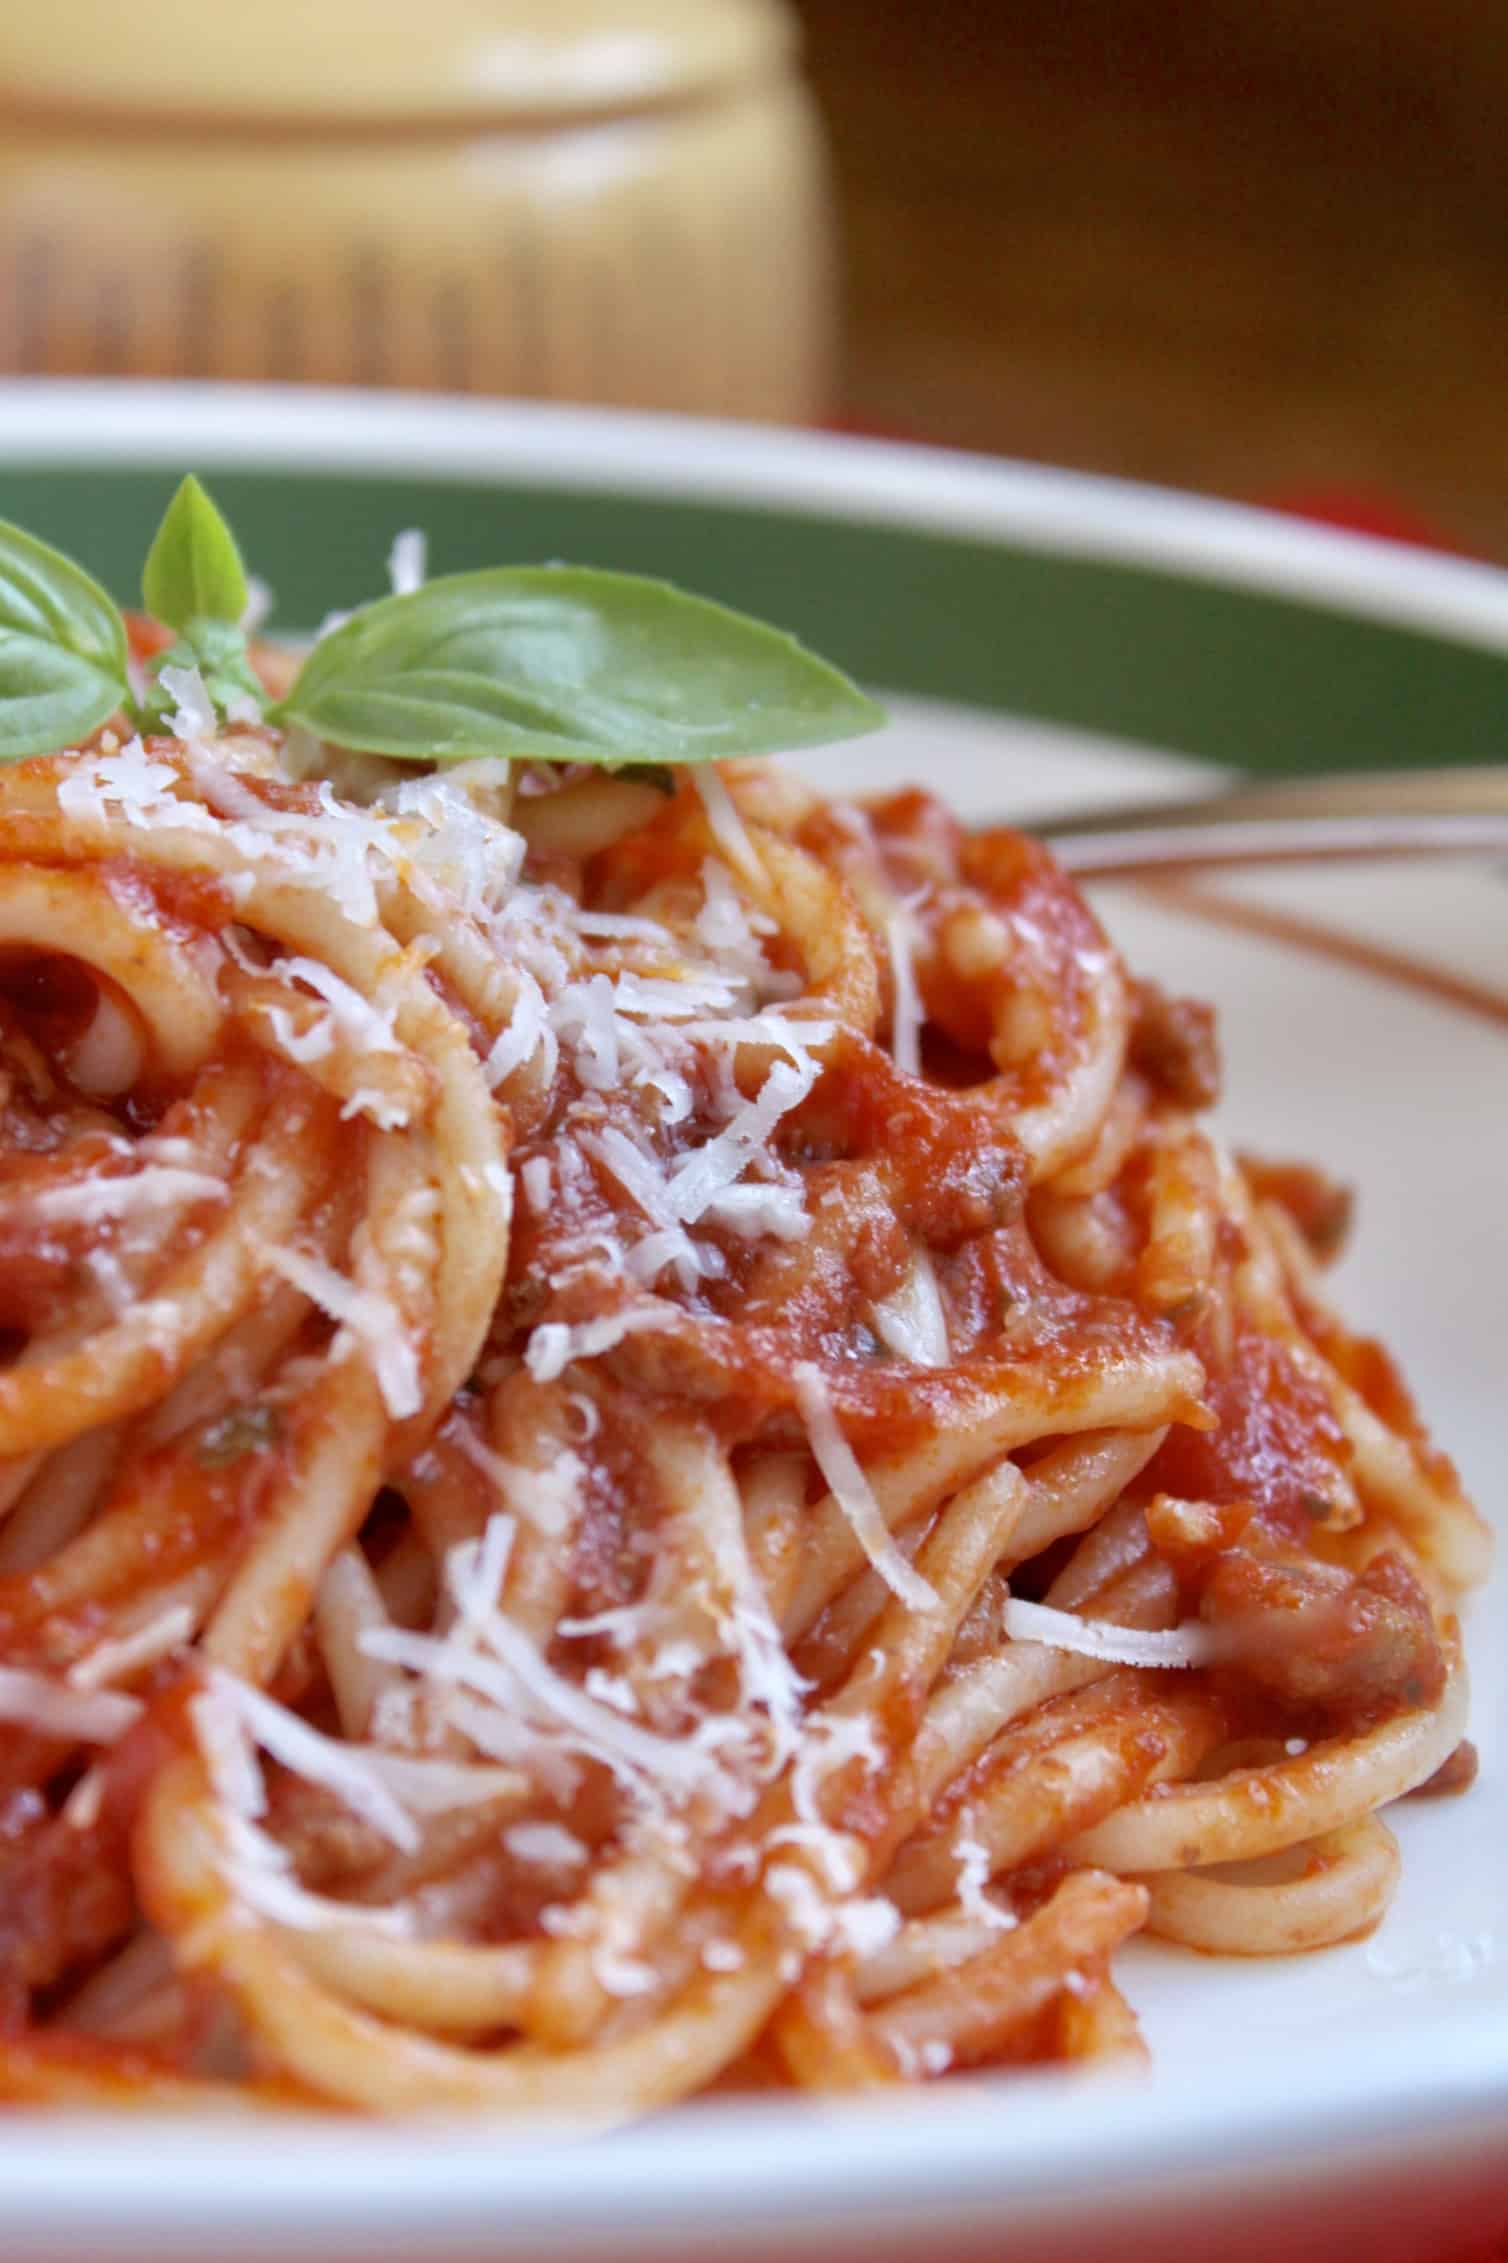 Classic Tomato Sauce Recipe for Pasta